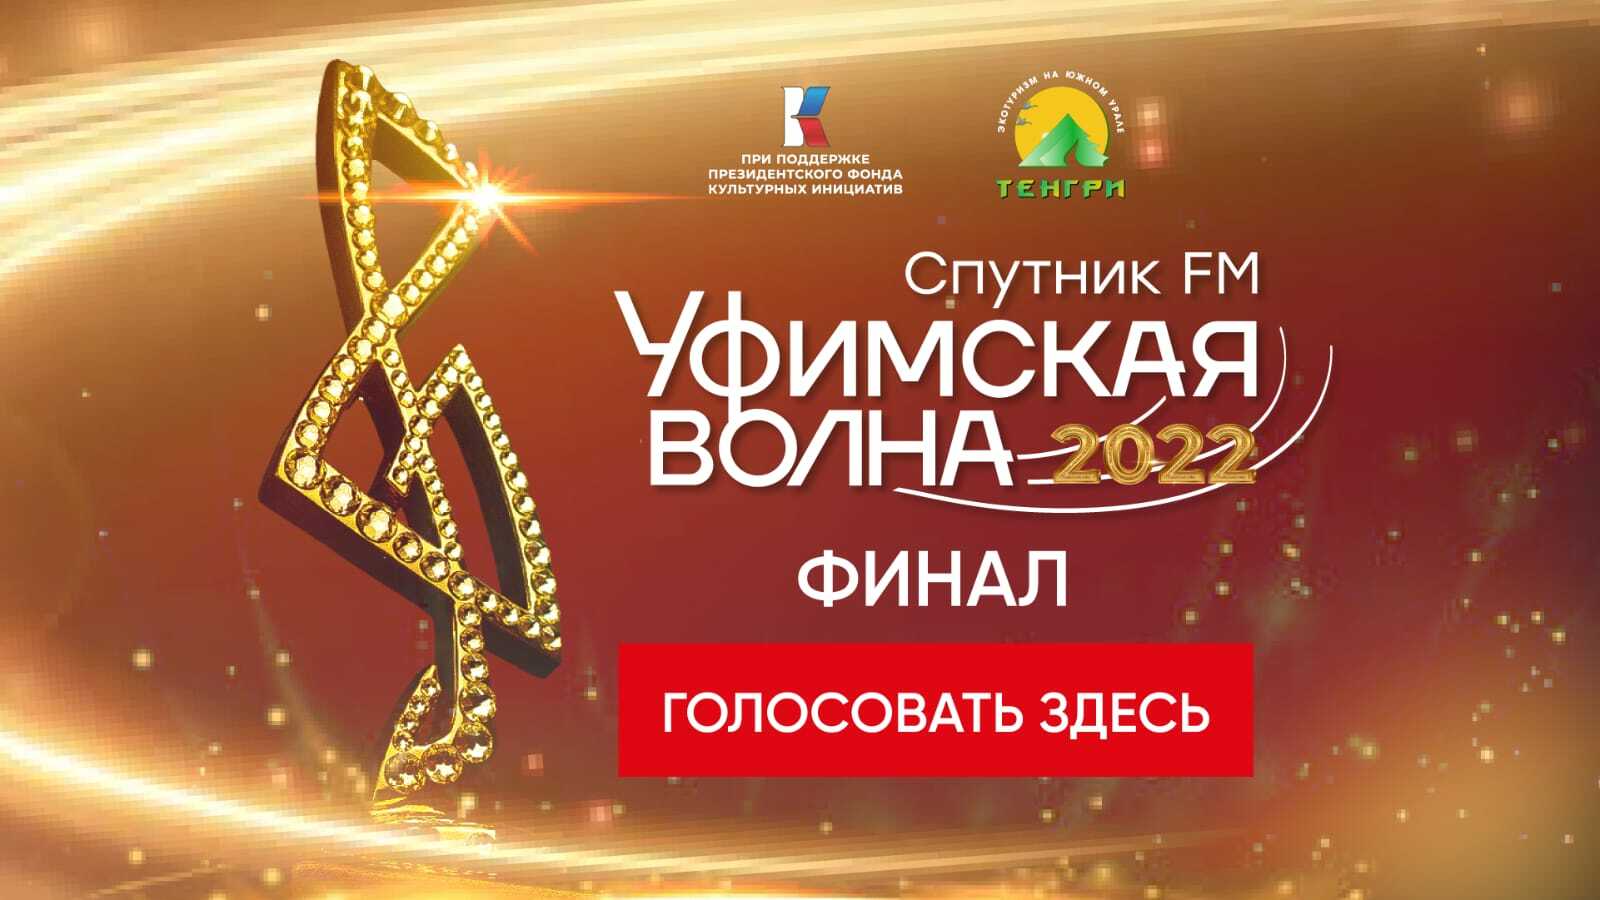 Идет финальное голосование музыкального конкурса «Уфимская Волна 2022»!